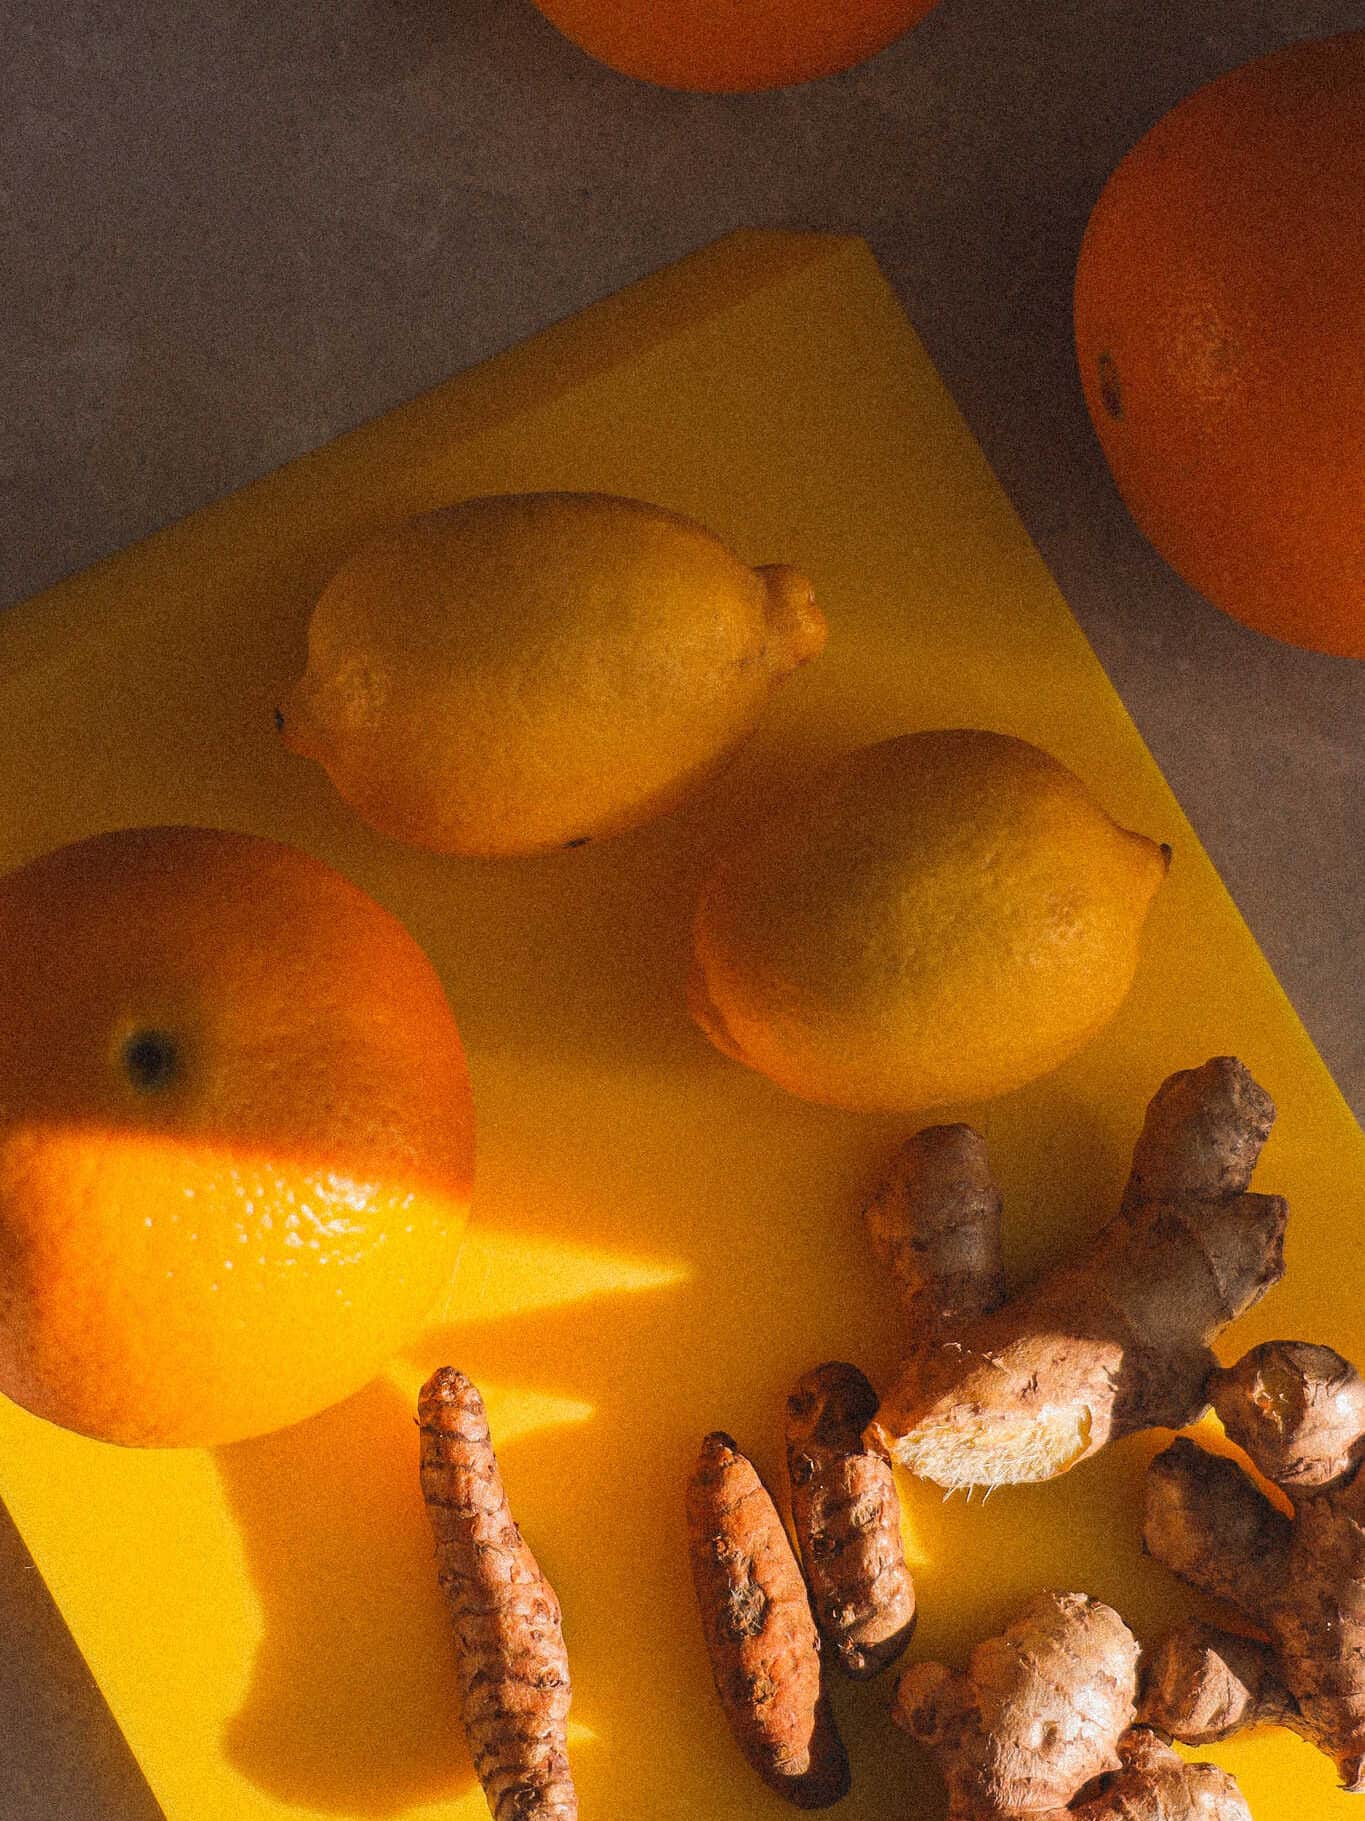 Ingefærshots med appelsin